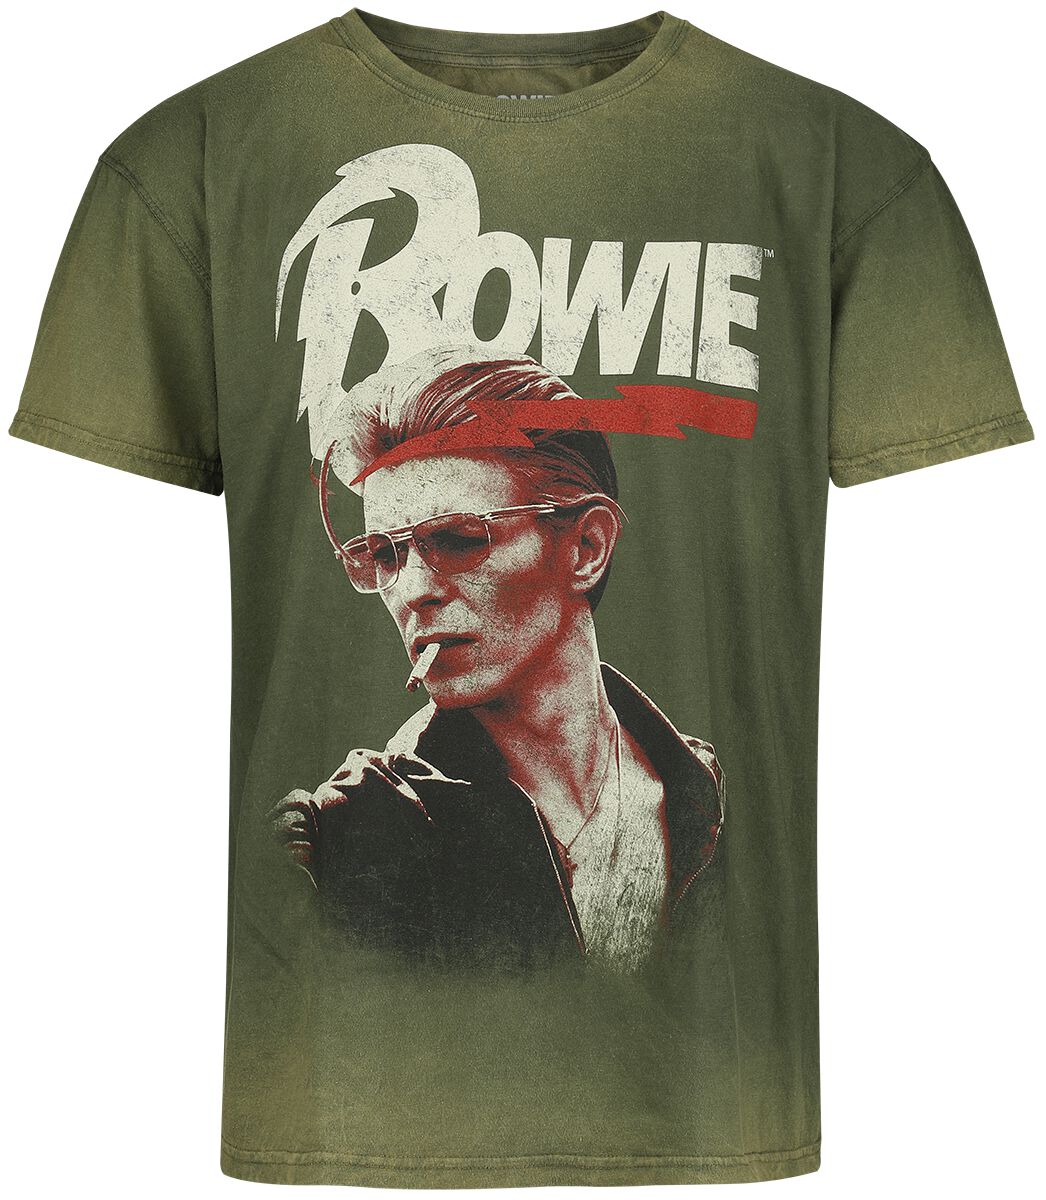 David Bowie T-Shirt - Smoking - S bis 3XL - für Männer - Größe XL - grün  - Lizenziertes Merchandise!